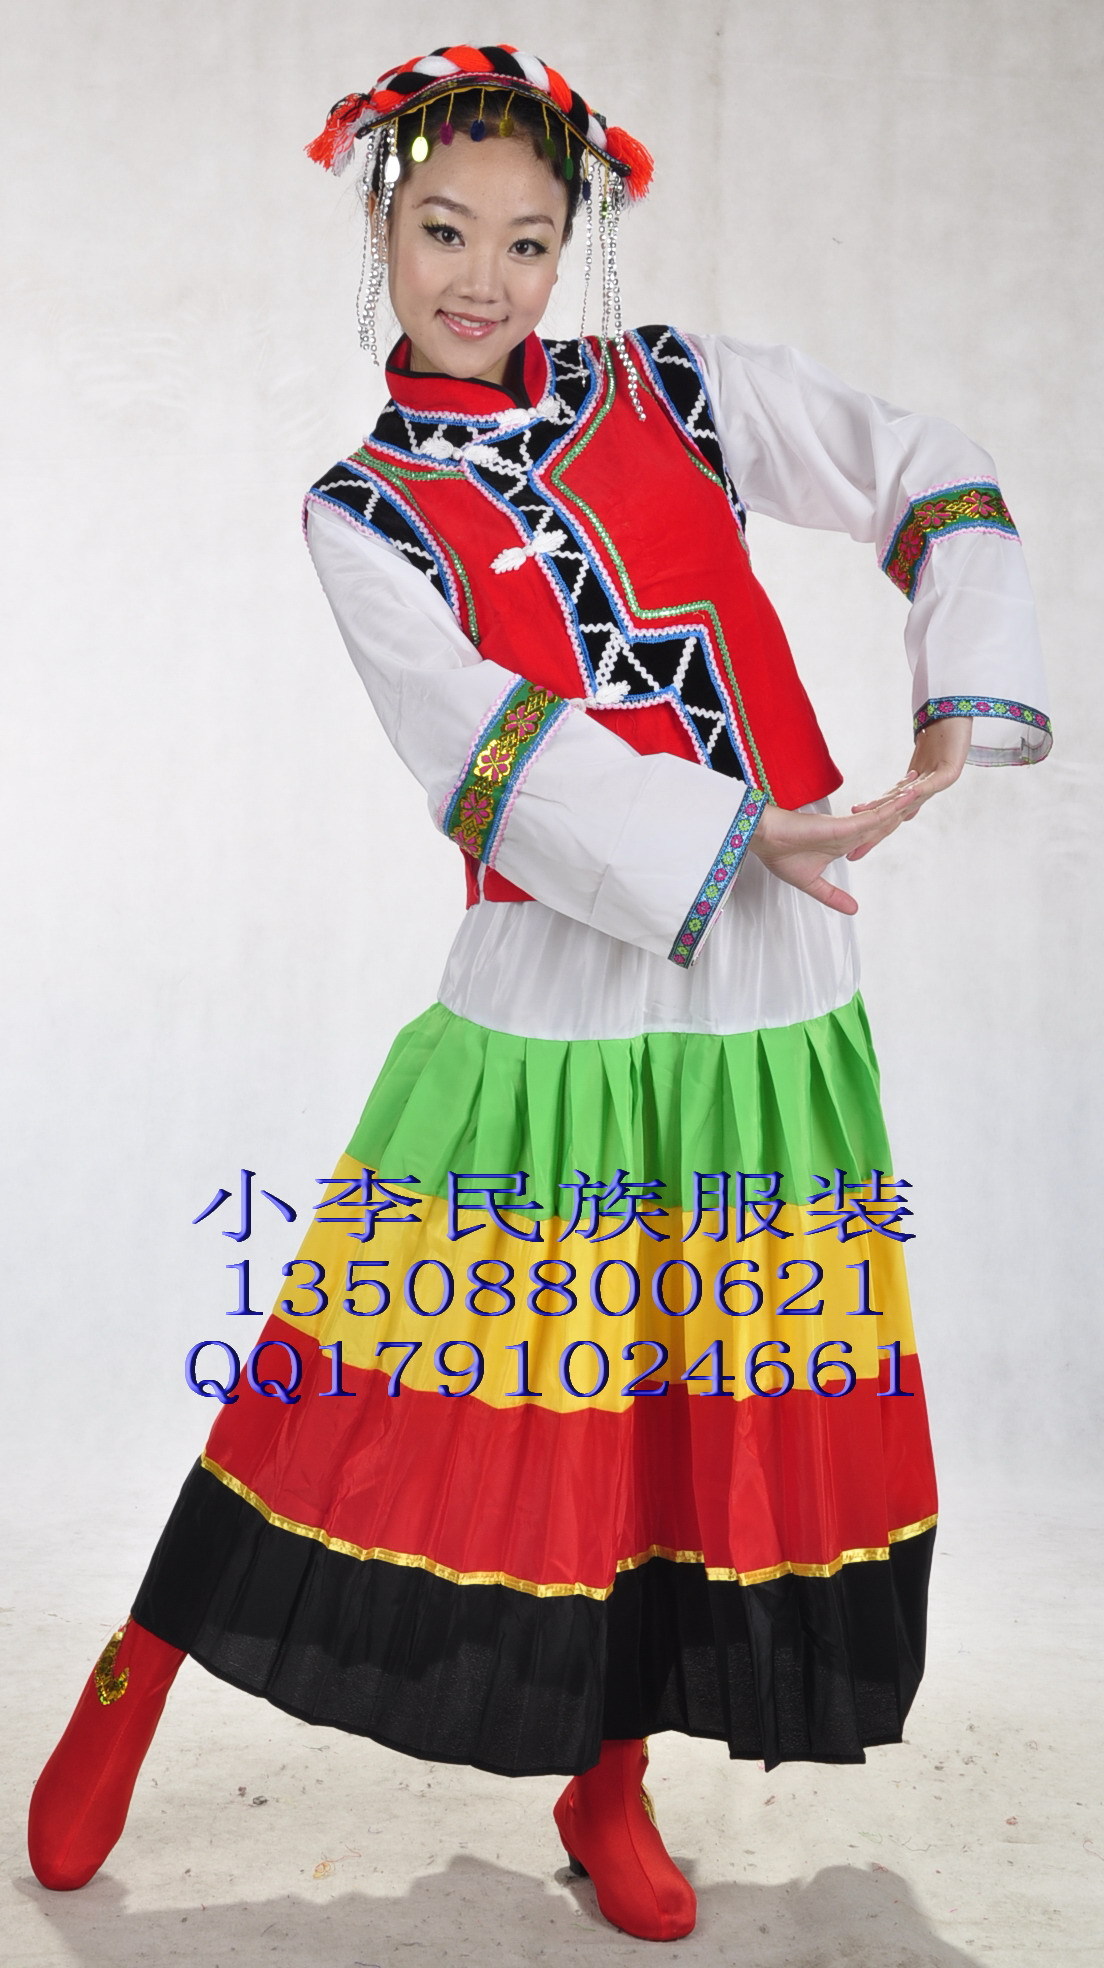 云南少数民族凉山彝族女装/民族舞蹈演出服装/舞台表演彝族服装